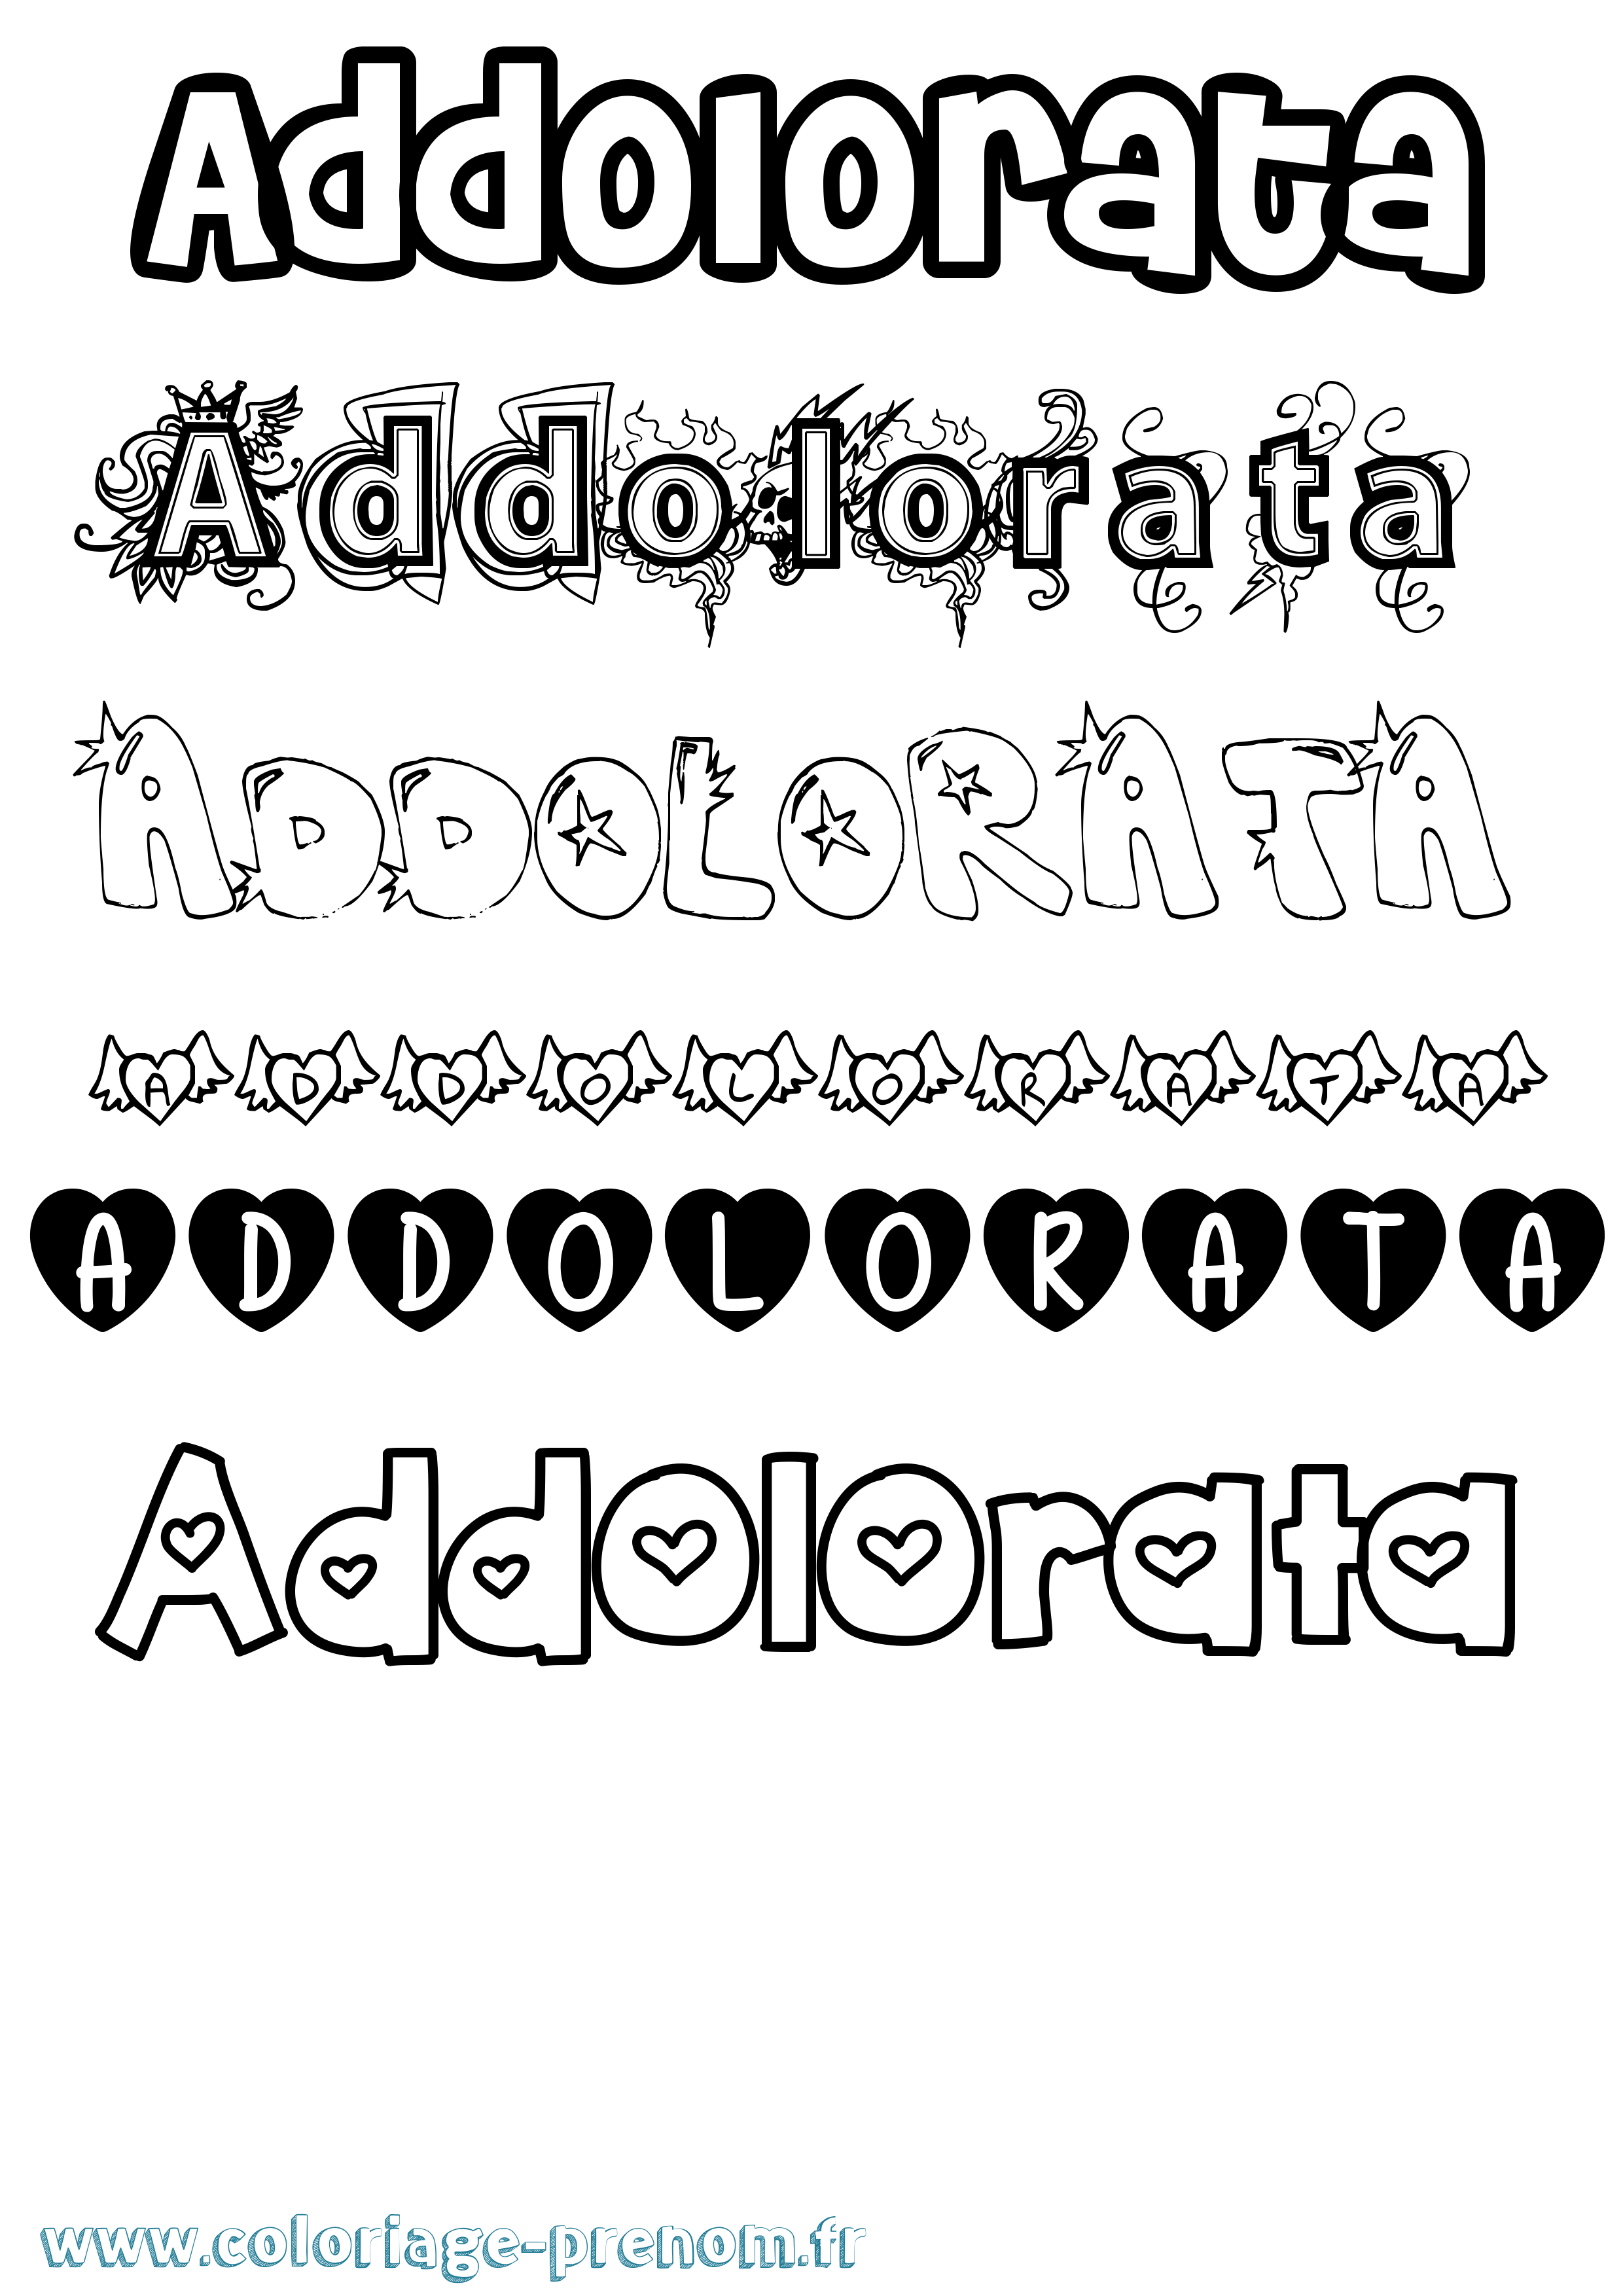 Coloriage prénom Addolorata Girly